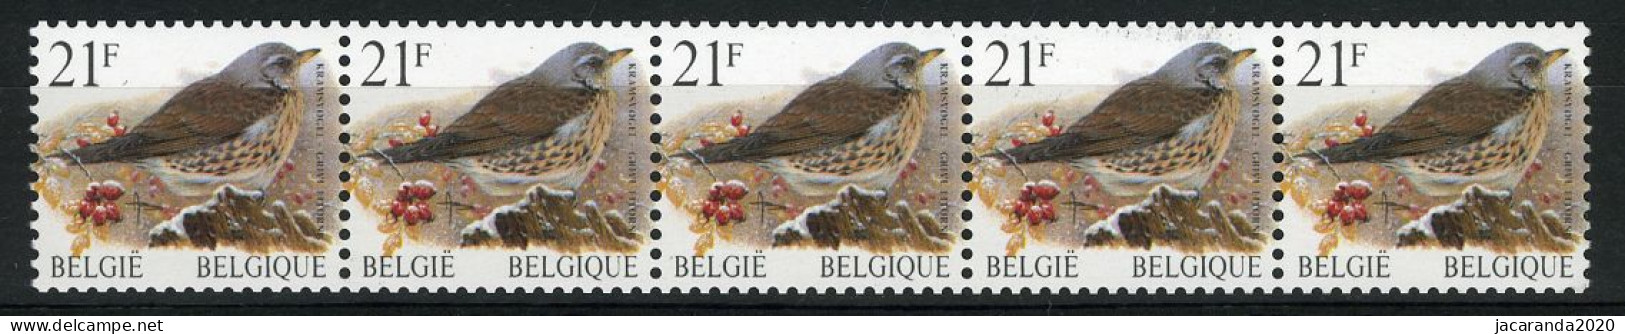 België R89a - Vogels - Oiseaux - Buzin (2792) - 21F - Kramsvogel - Strook Met 4 Cijfers - Bande Avec 4 Chiffres - Francobolli In Bobina